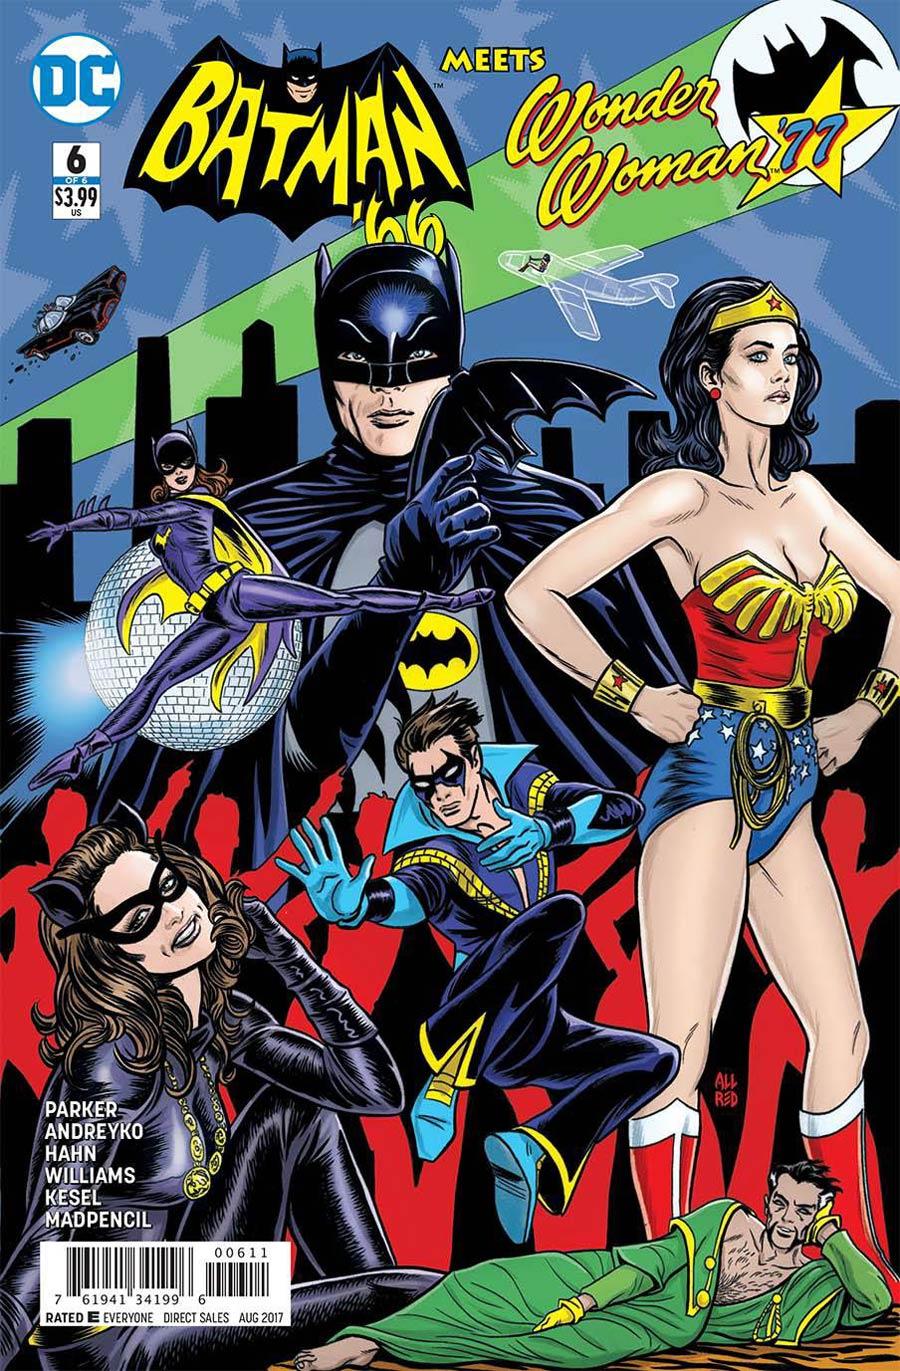 Batman 66 Meets Wonder Woman 77 Vol. 1 #6